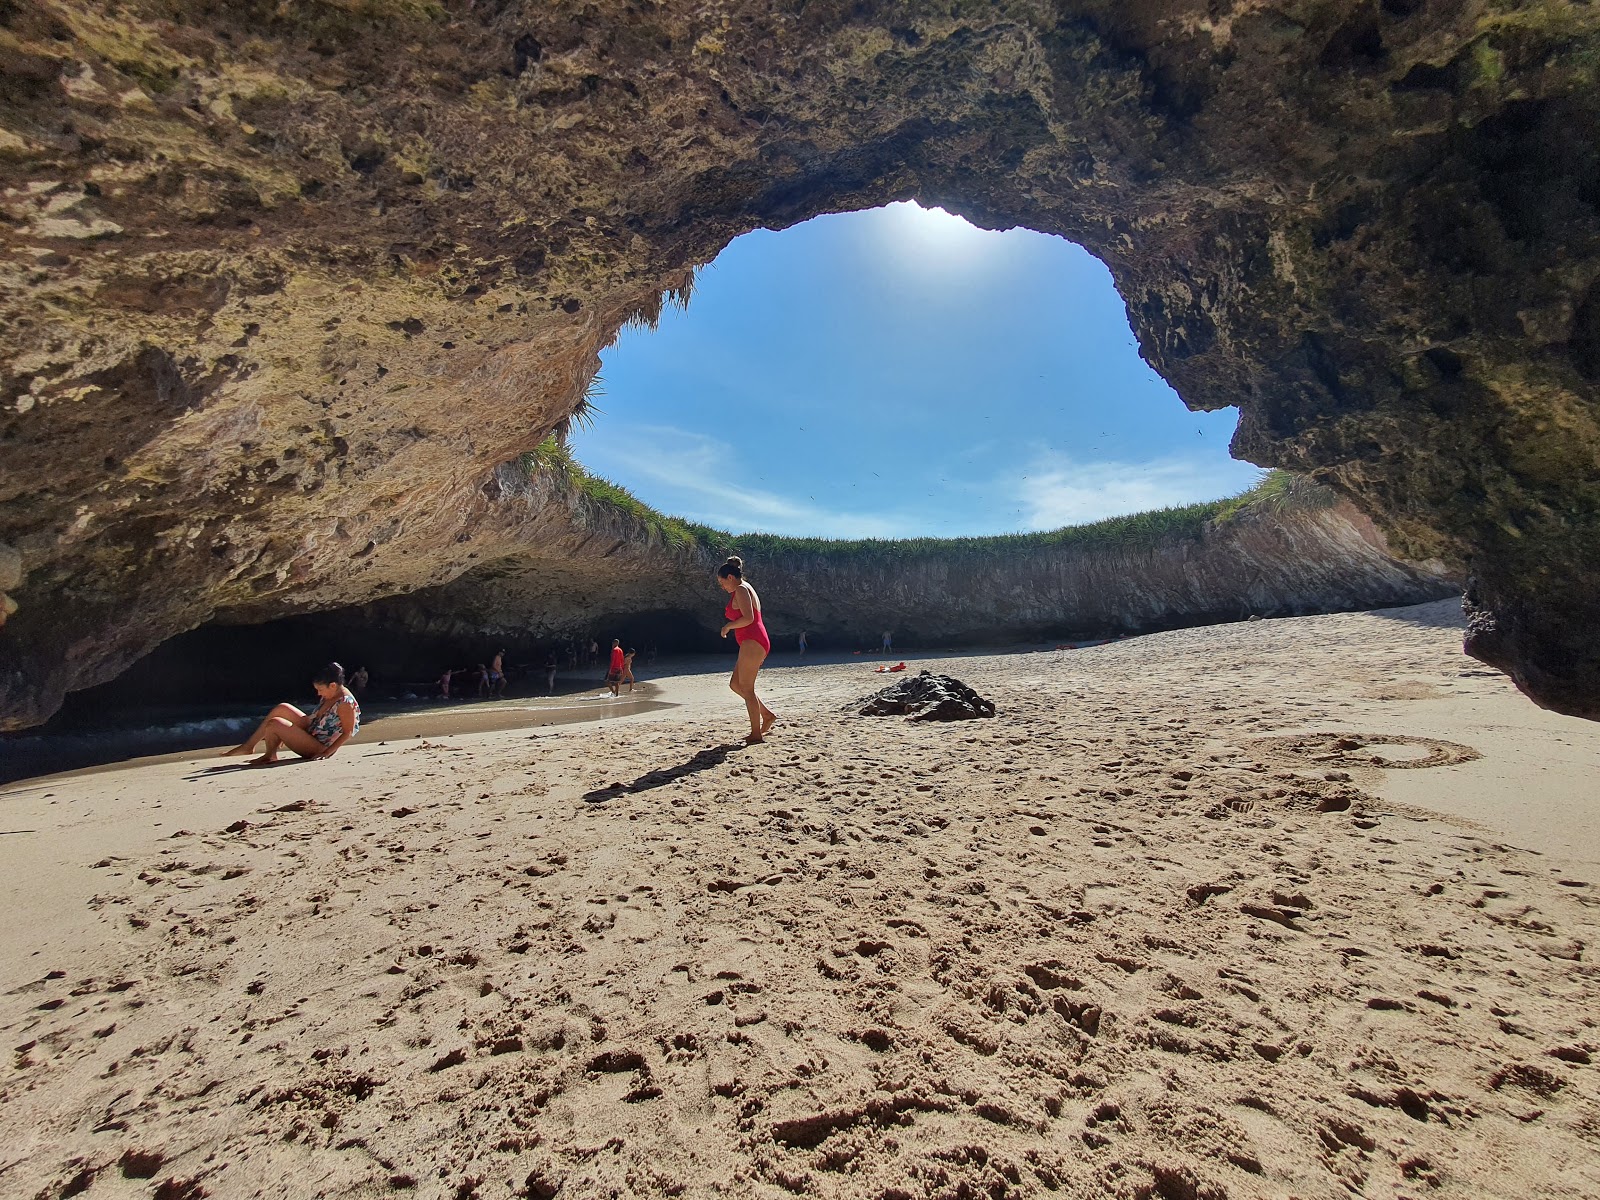 Fotografija Playa del Amor (Hidden beach) nahaja se v naravnem okolju